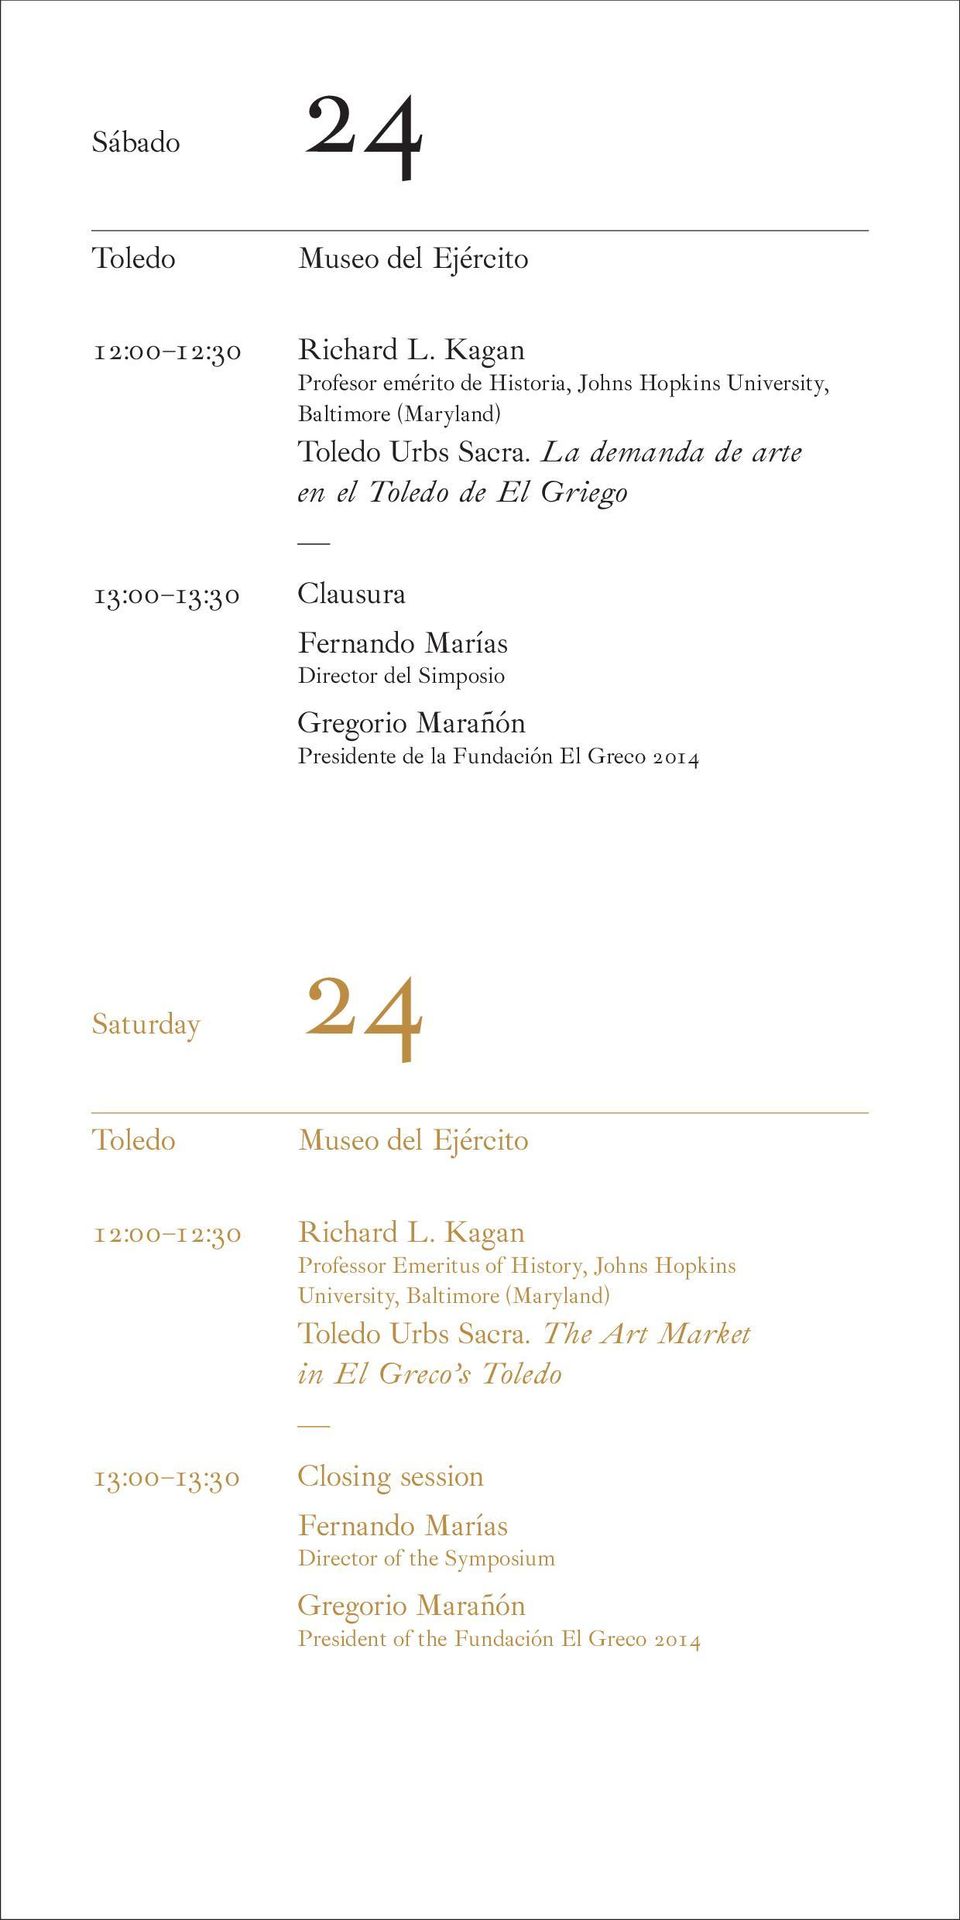 La demanda de arte en el Toledo de El Griego Clausura Director del Simposio Gregorio Marañón Presidente de la Fundación El Greco 2014